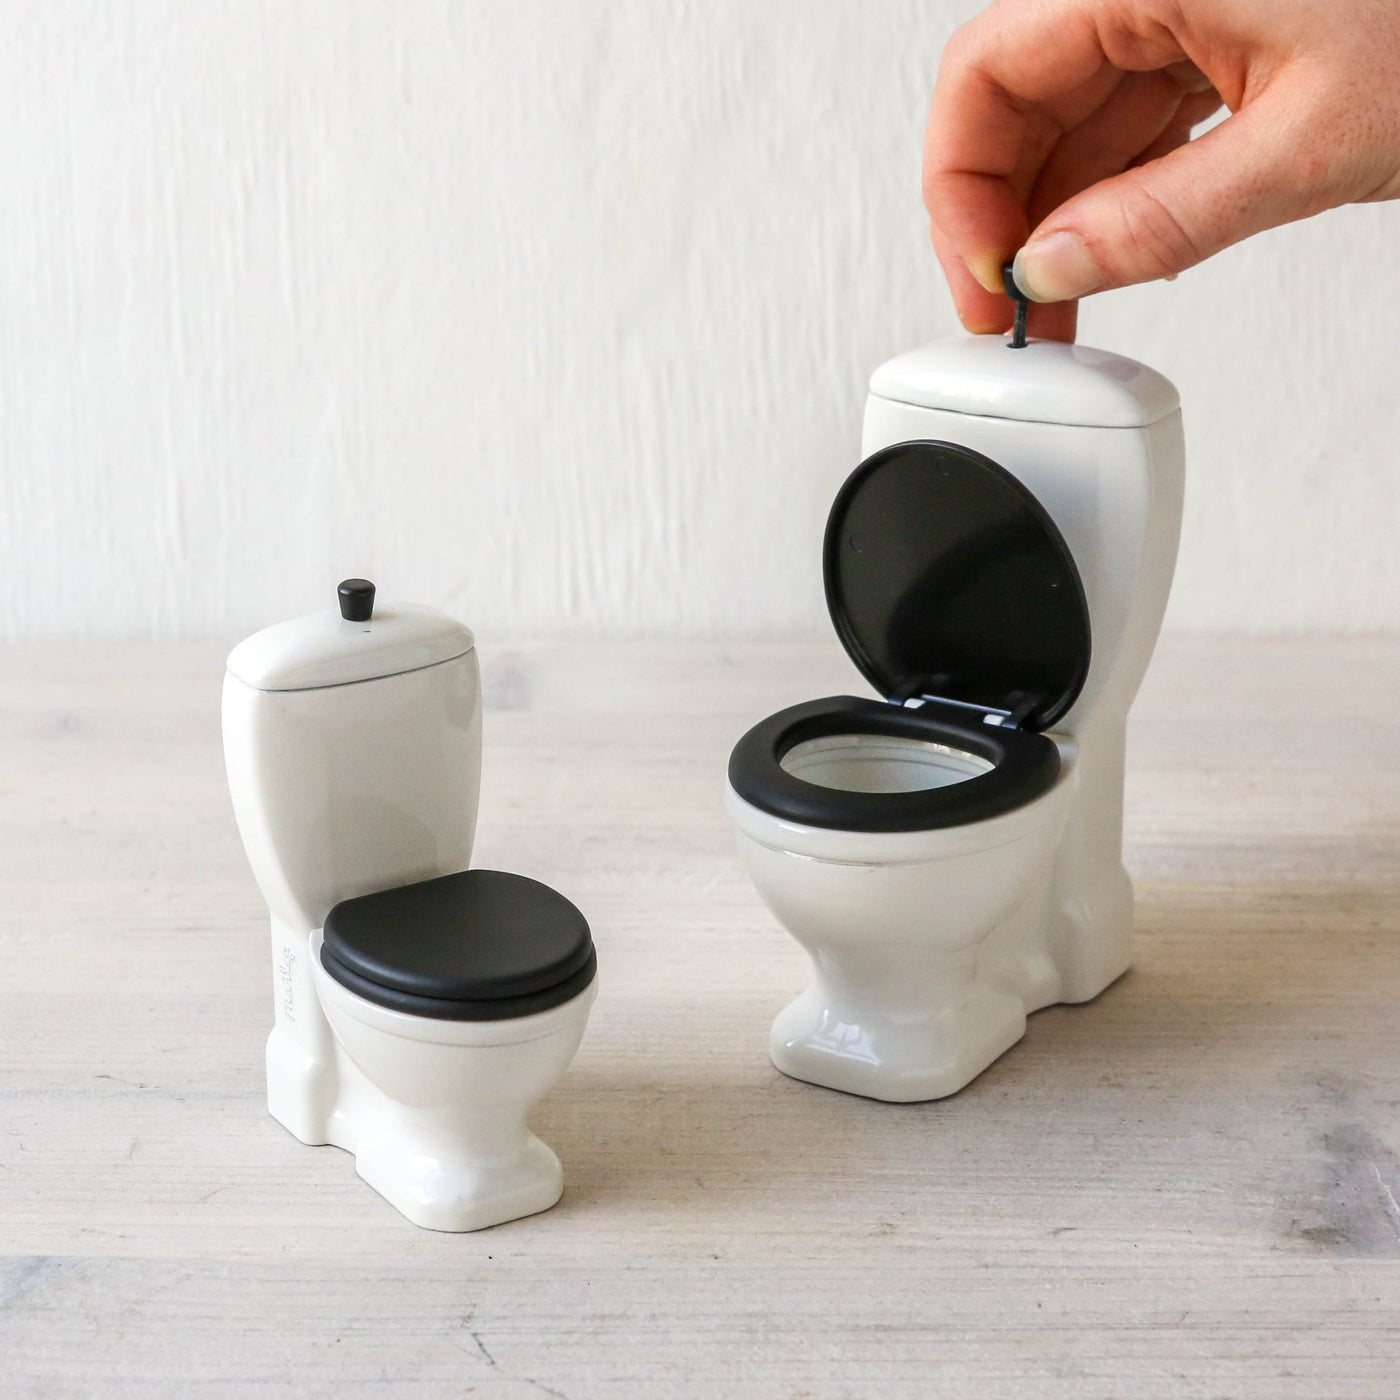 Maileg Miniature Toilet